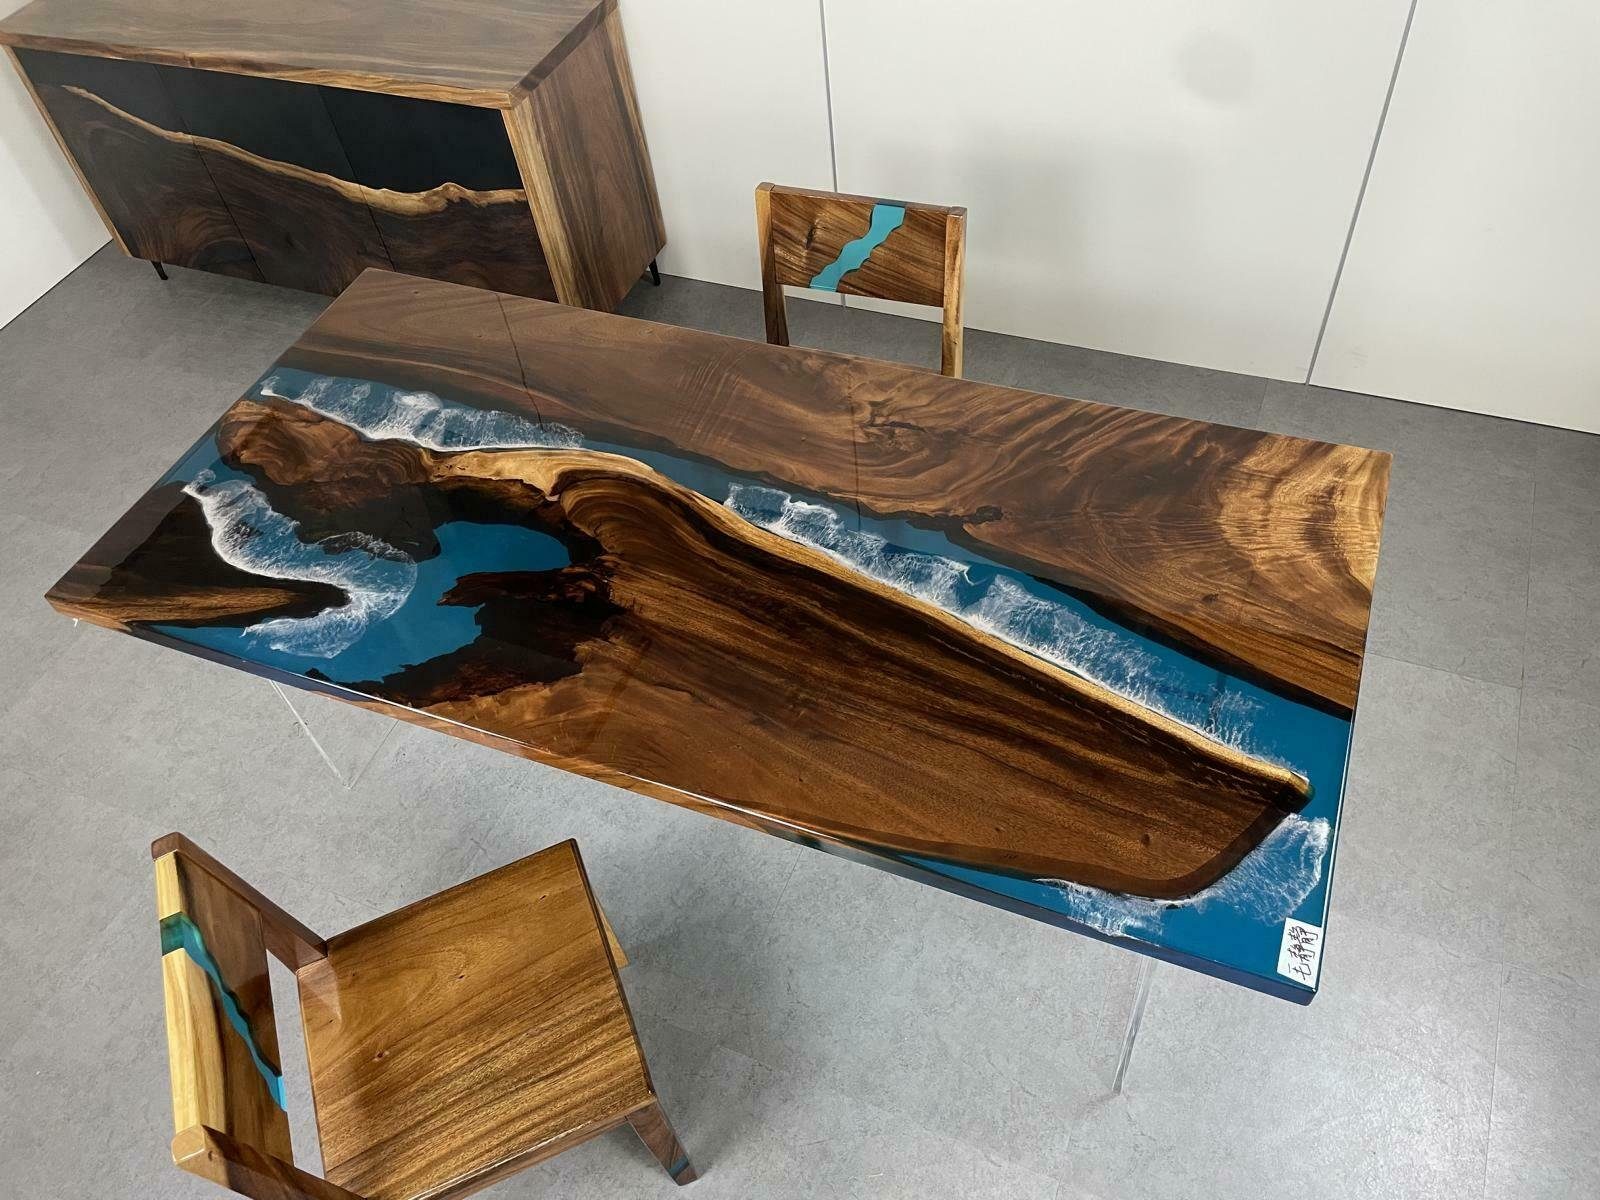 JVmoebel Esstisch, River Table Esstisch Tisch Holz Flusstisch 180 x 90 Massive Tische